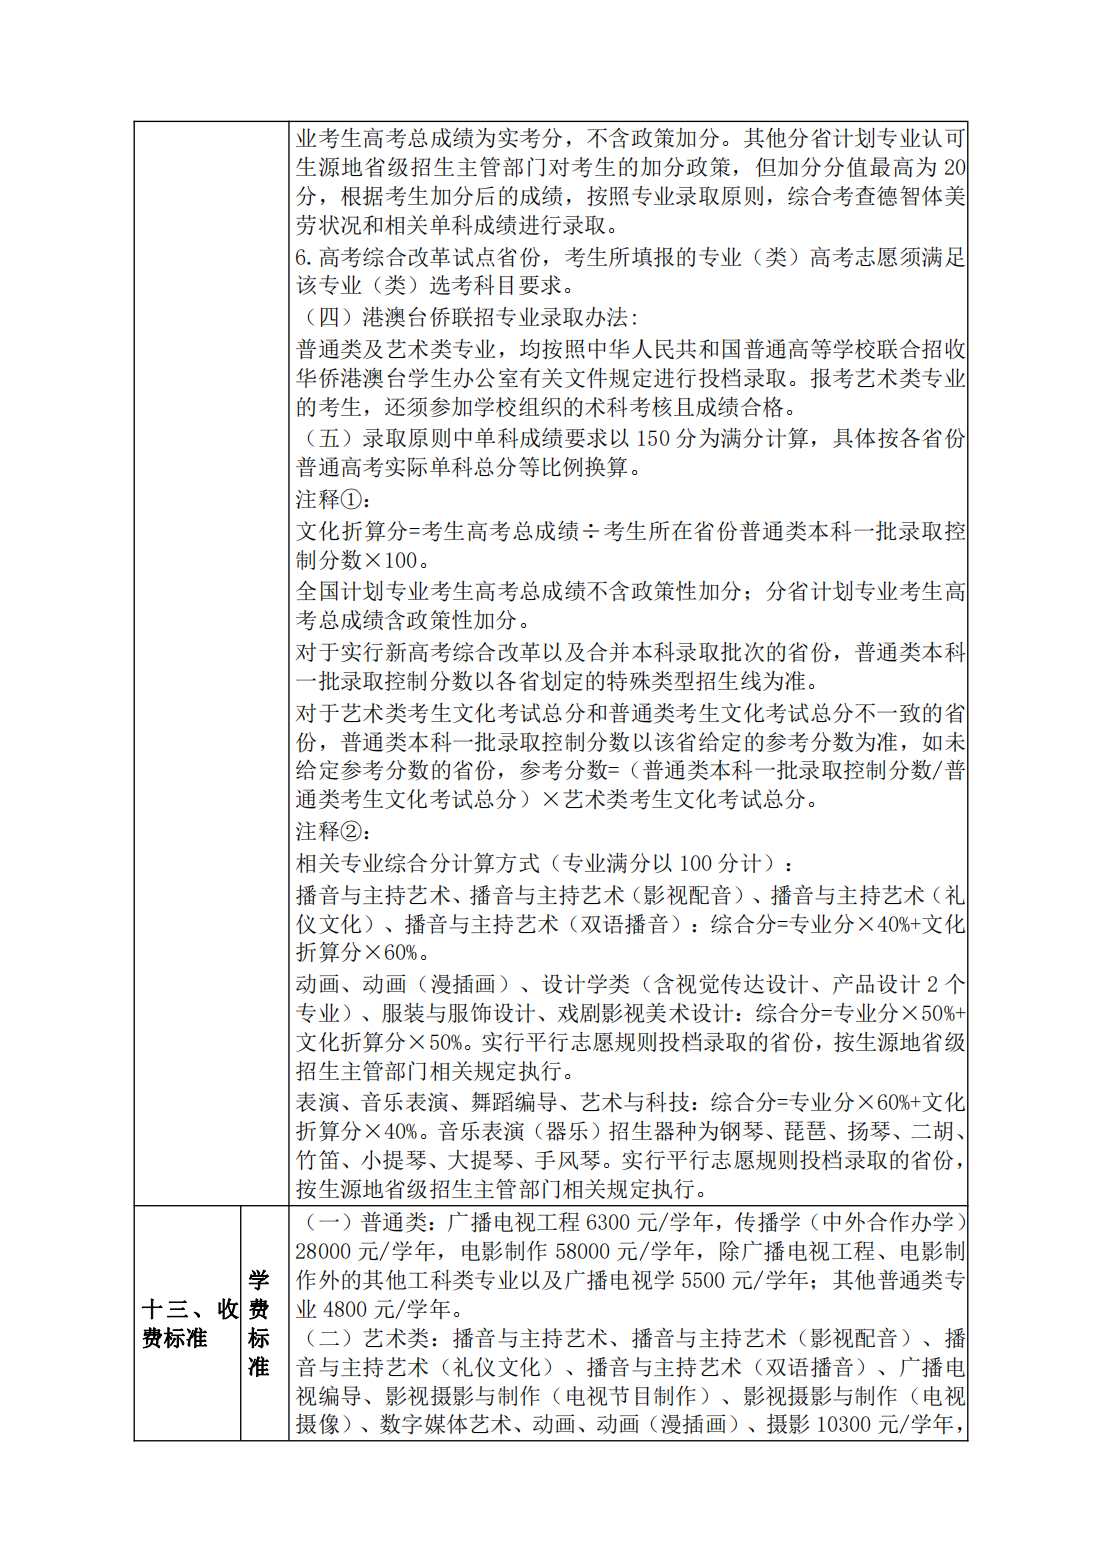 浙江传媒学院 2023 年普通高校招生章程